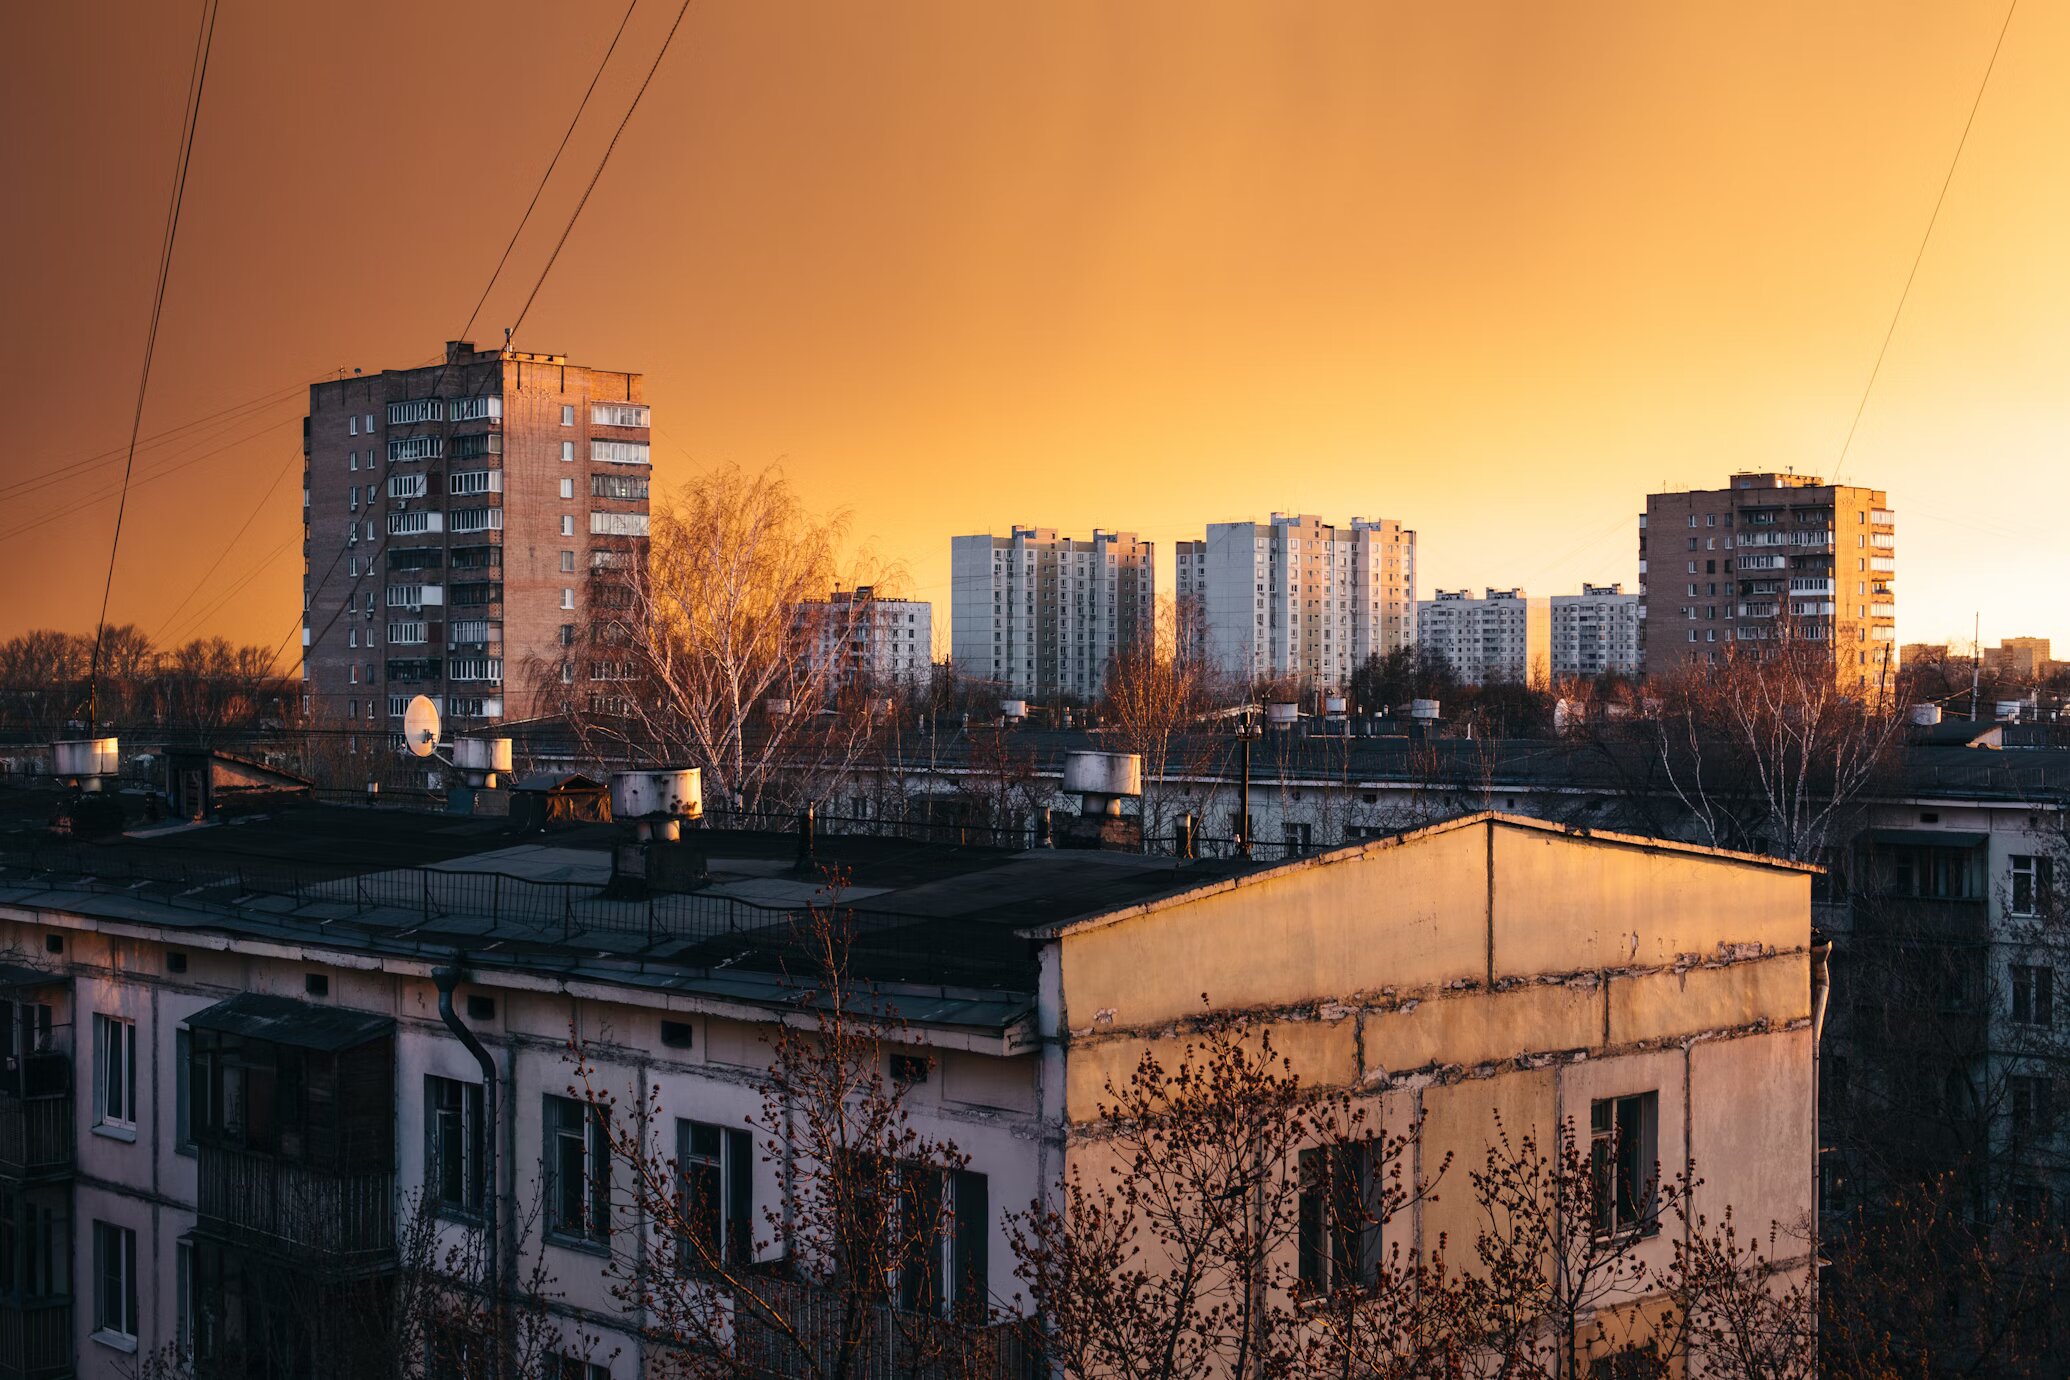  Квартиры под реновацию: какие доходности, в каком районе Москвы лучше покупать, в чём риски 